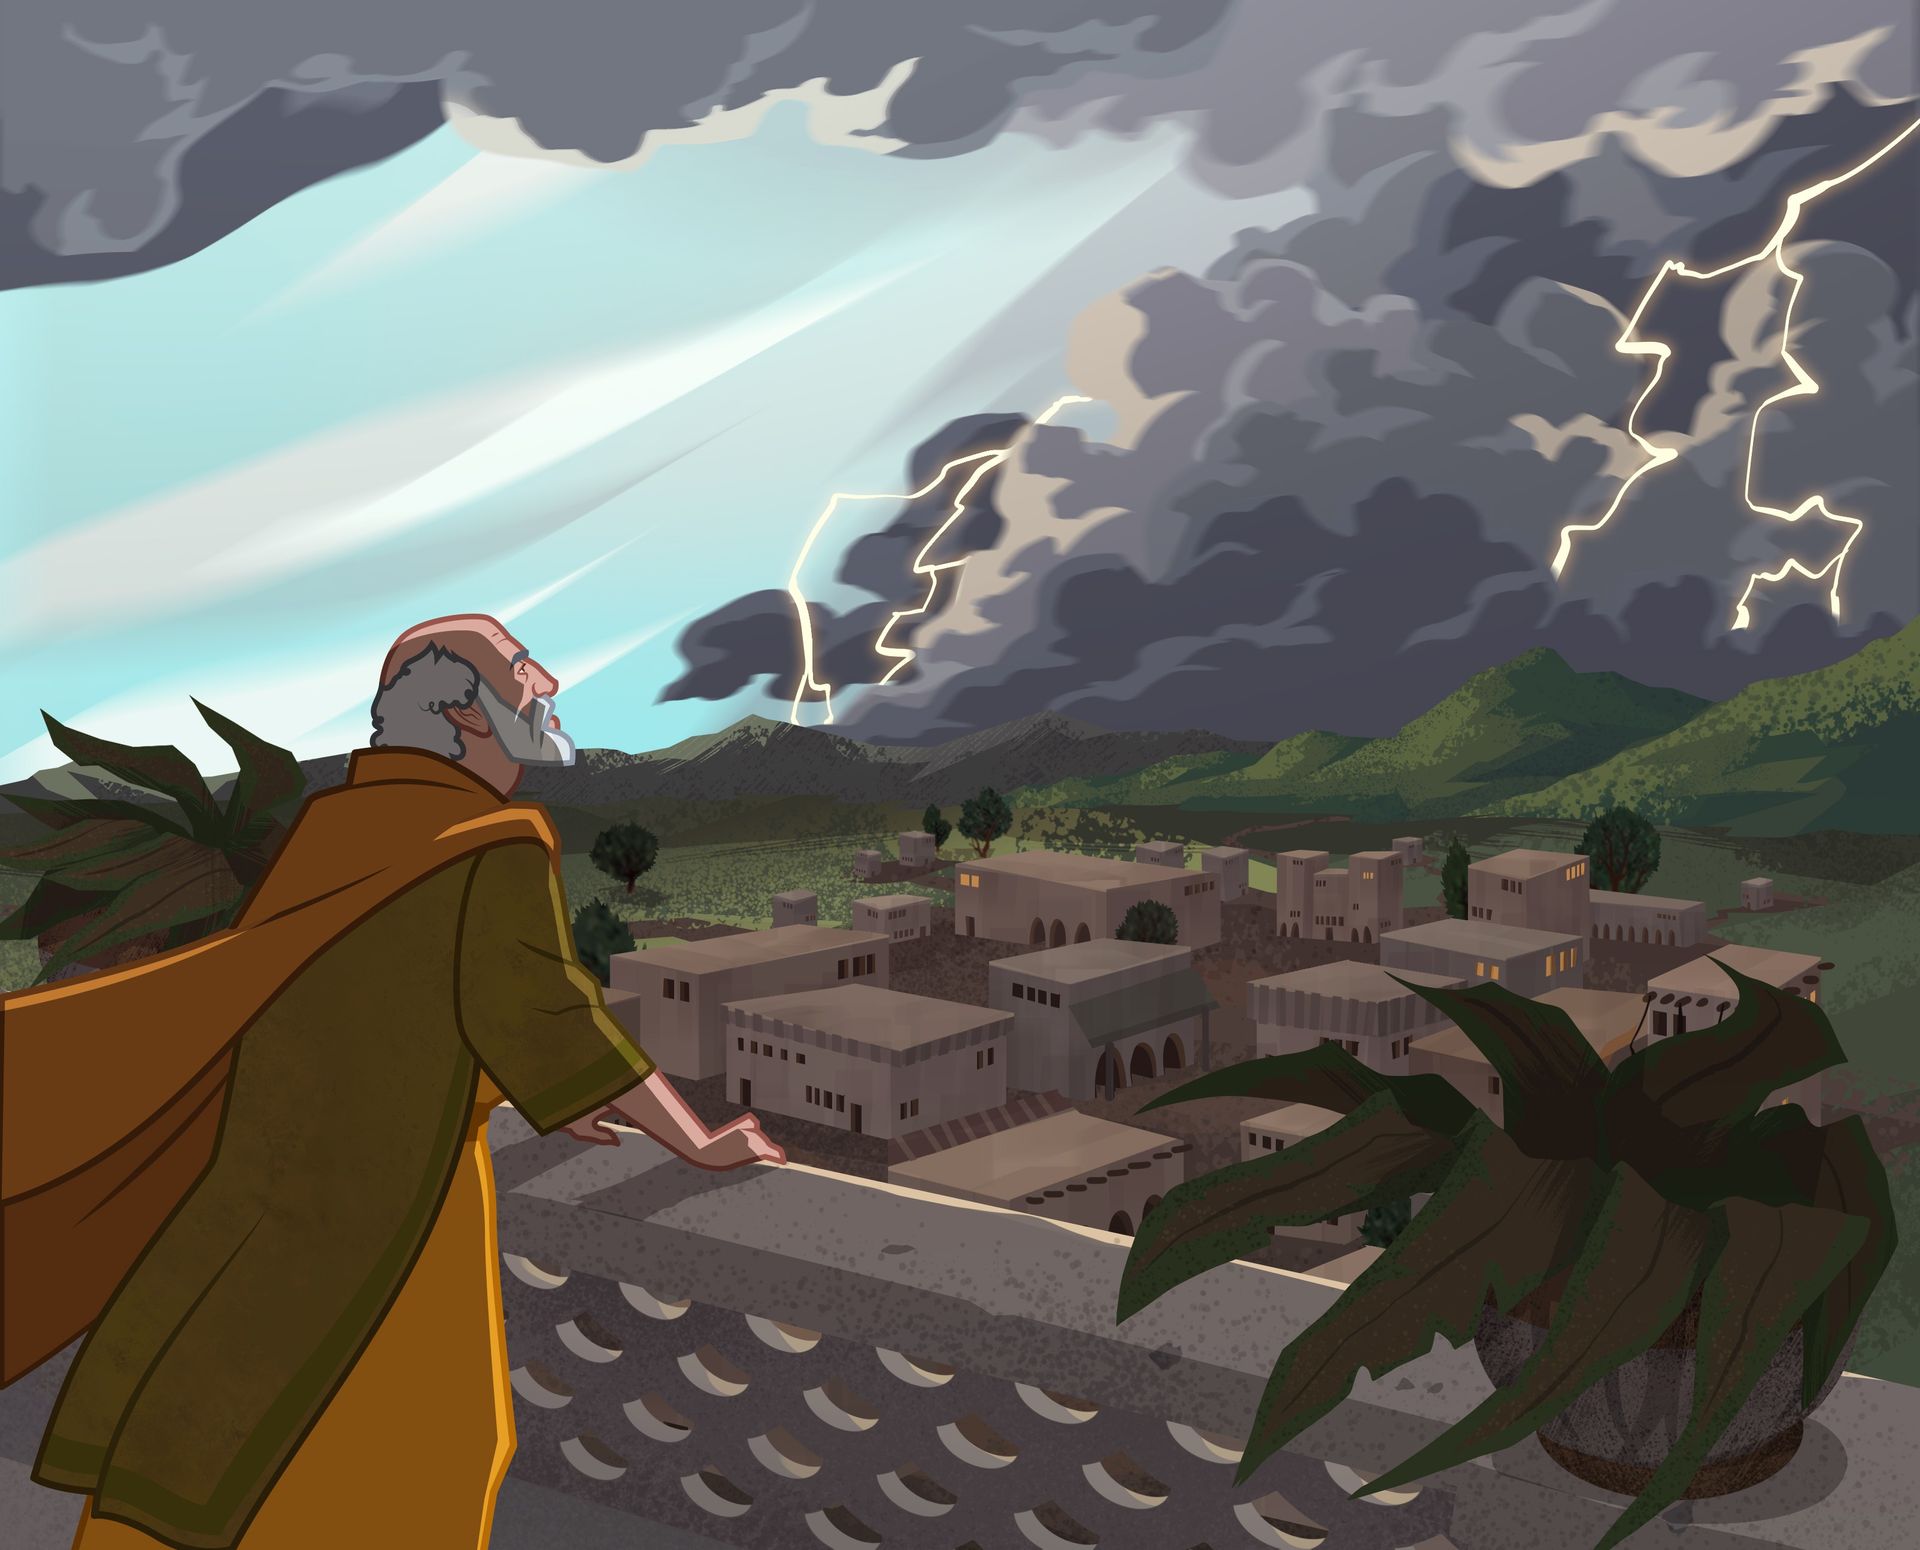 Ilustración de Job mirando una tormenta. 
Job 1:6–12